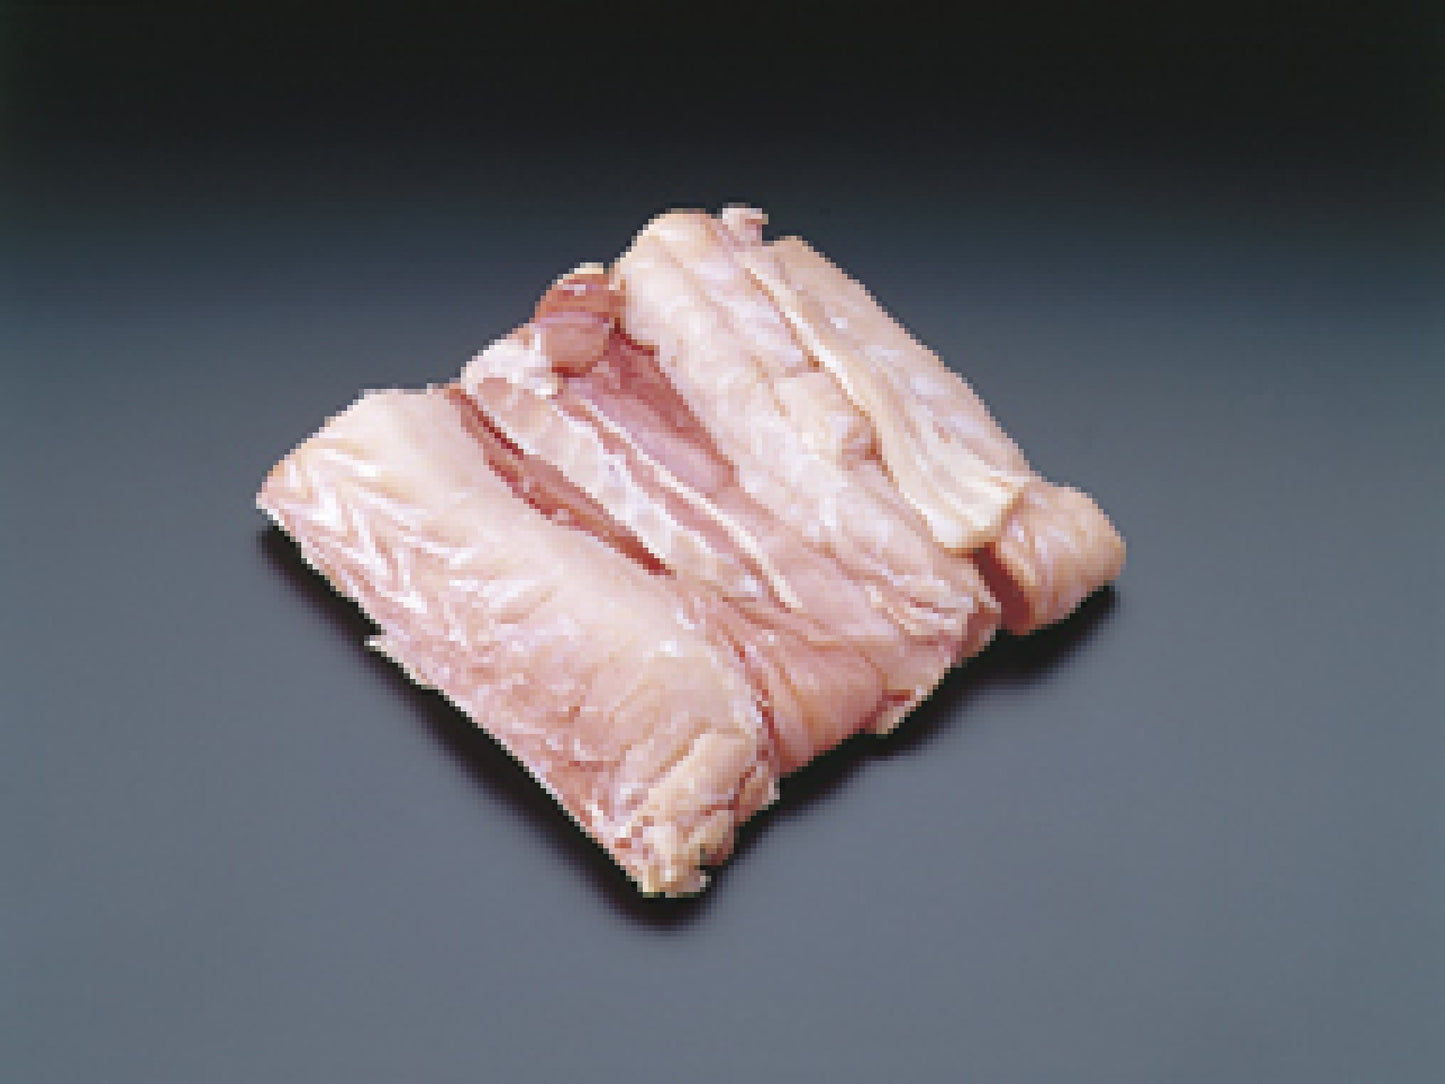 ワニ肉テールミート[1kg]